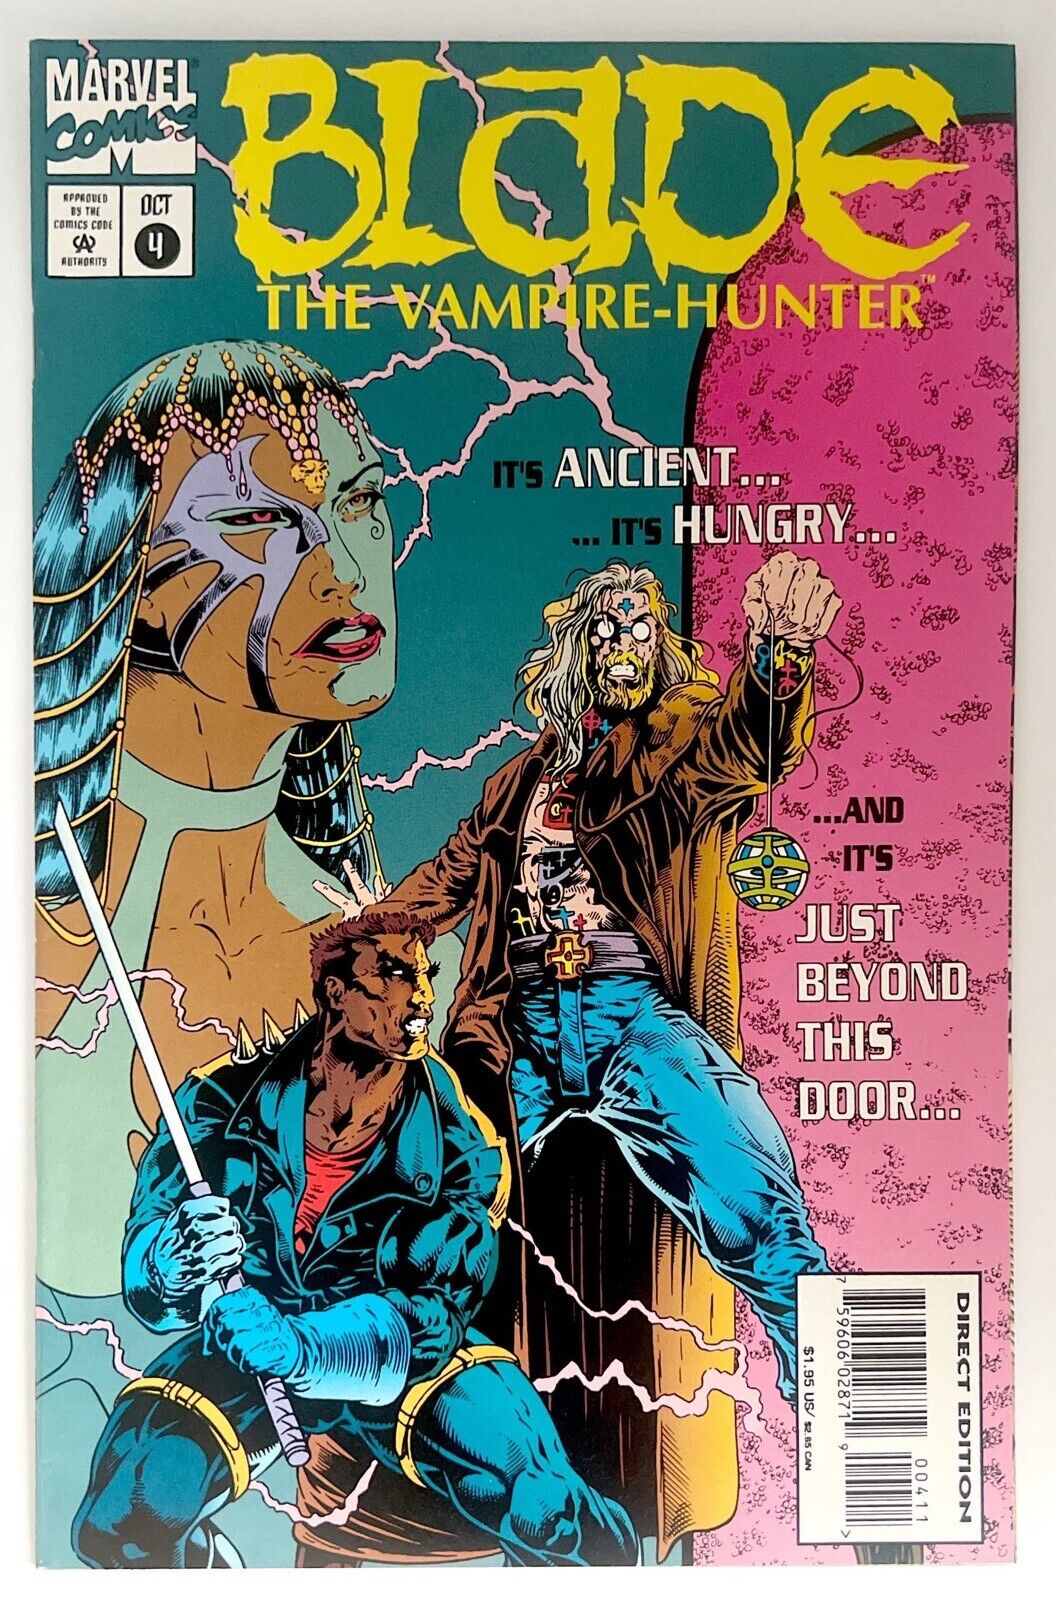 Blade: the Vampire-Hunter #4 (Marvel Comics October 1994)